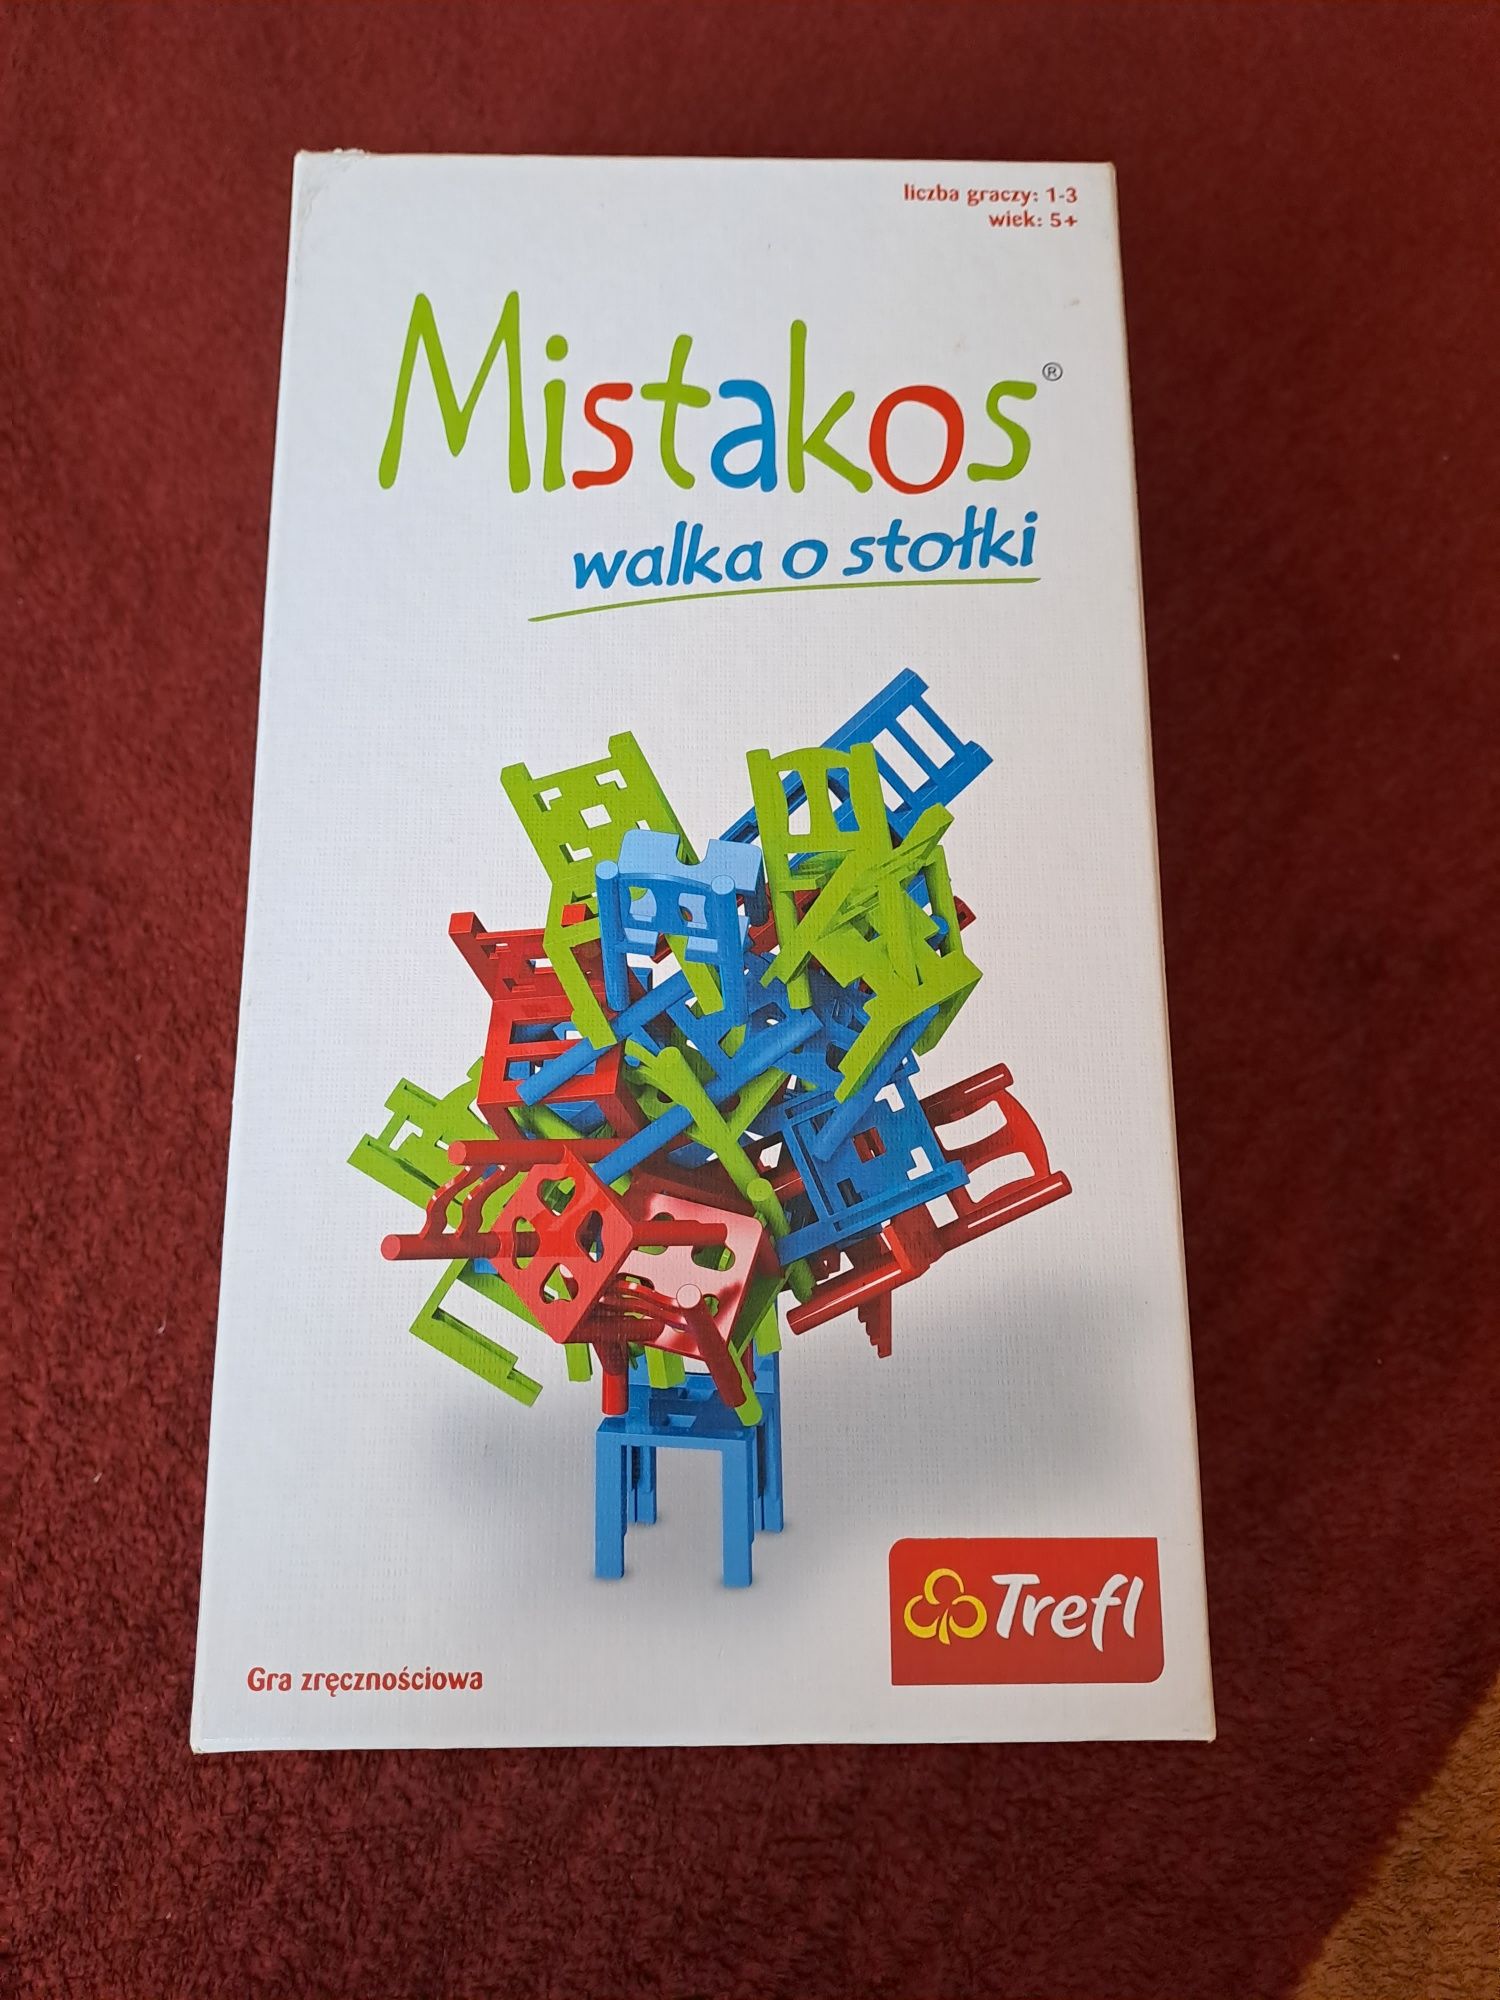 Гра trefl mistakos, польськомовна версія